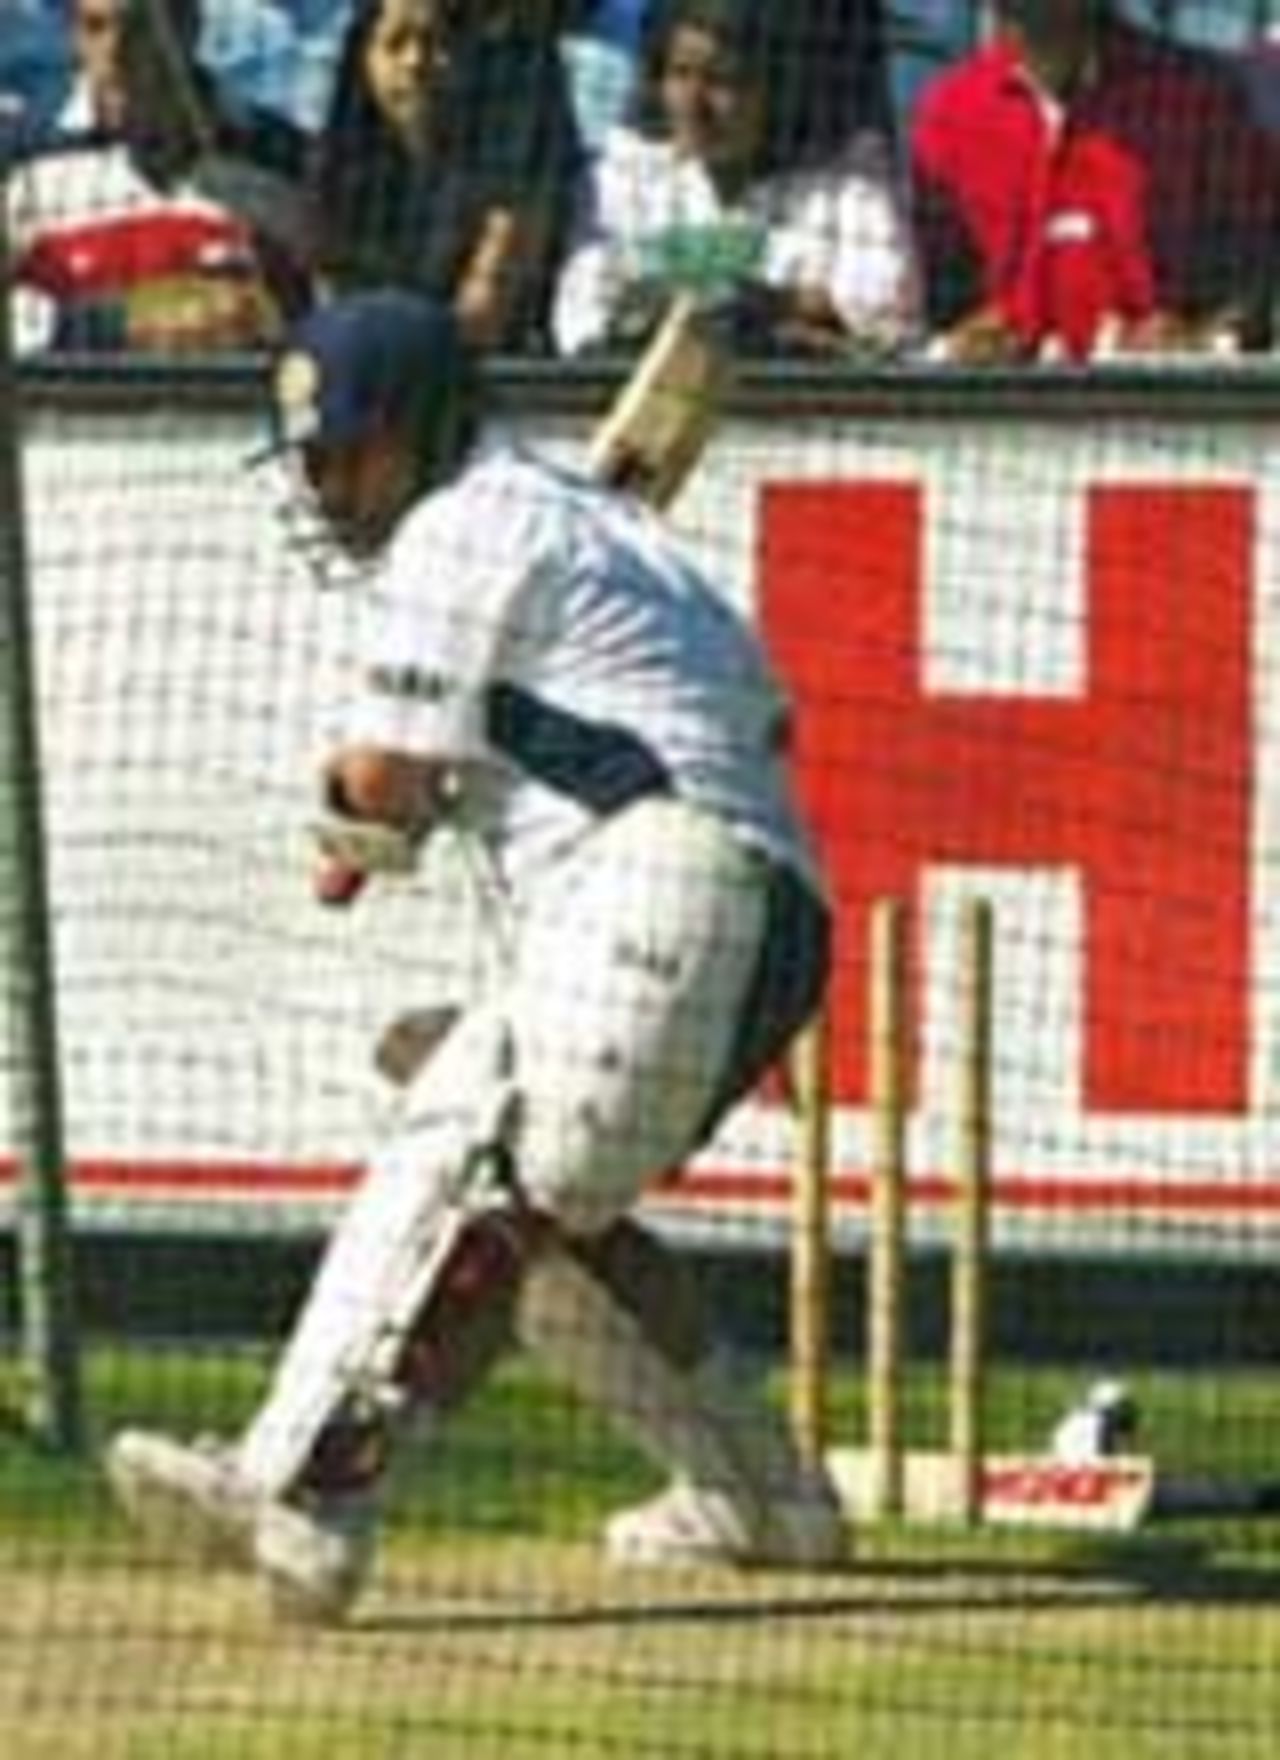 Sachin Tendulkar bats in the nets, Melbourne, December 23, 2003